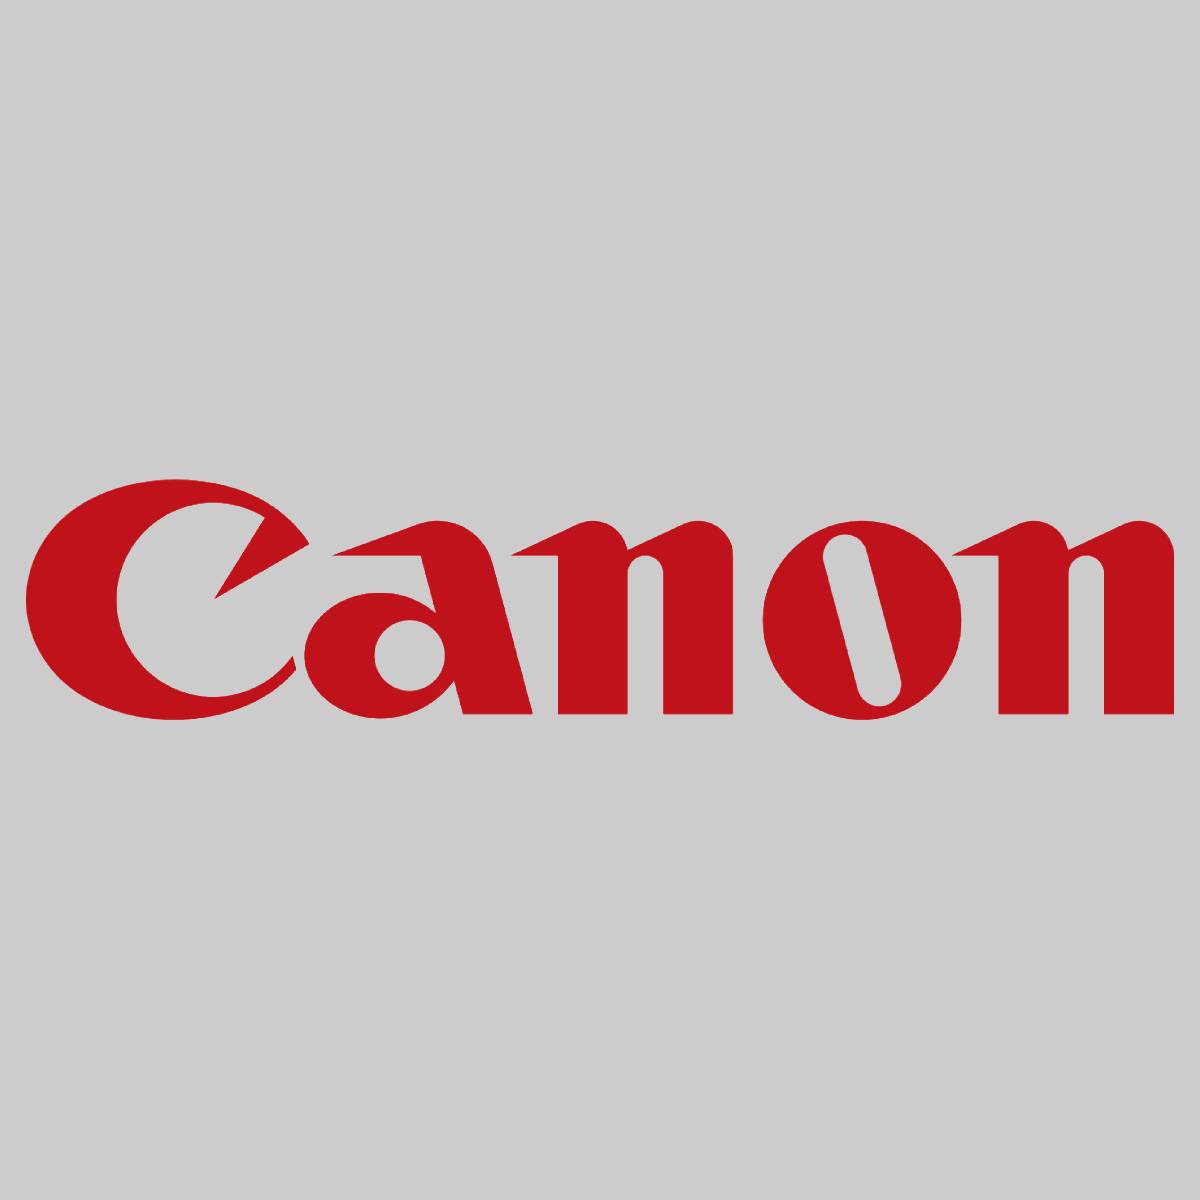 "Original Canon C-EXV 49 Toner Black 8524B002 IR Advance C3320 / C3325 / C3330